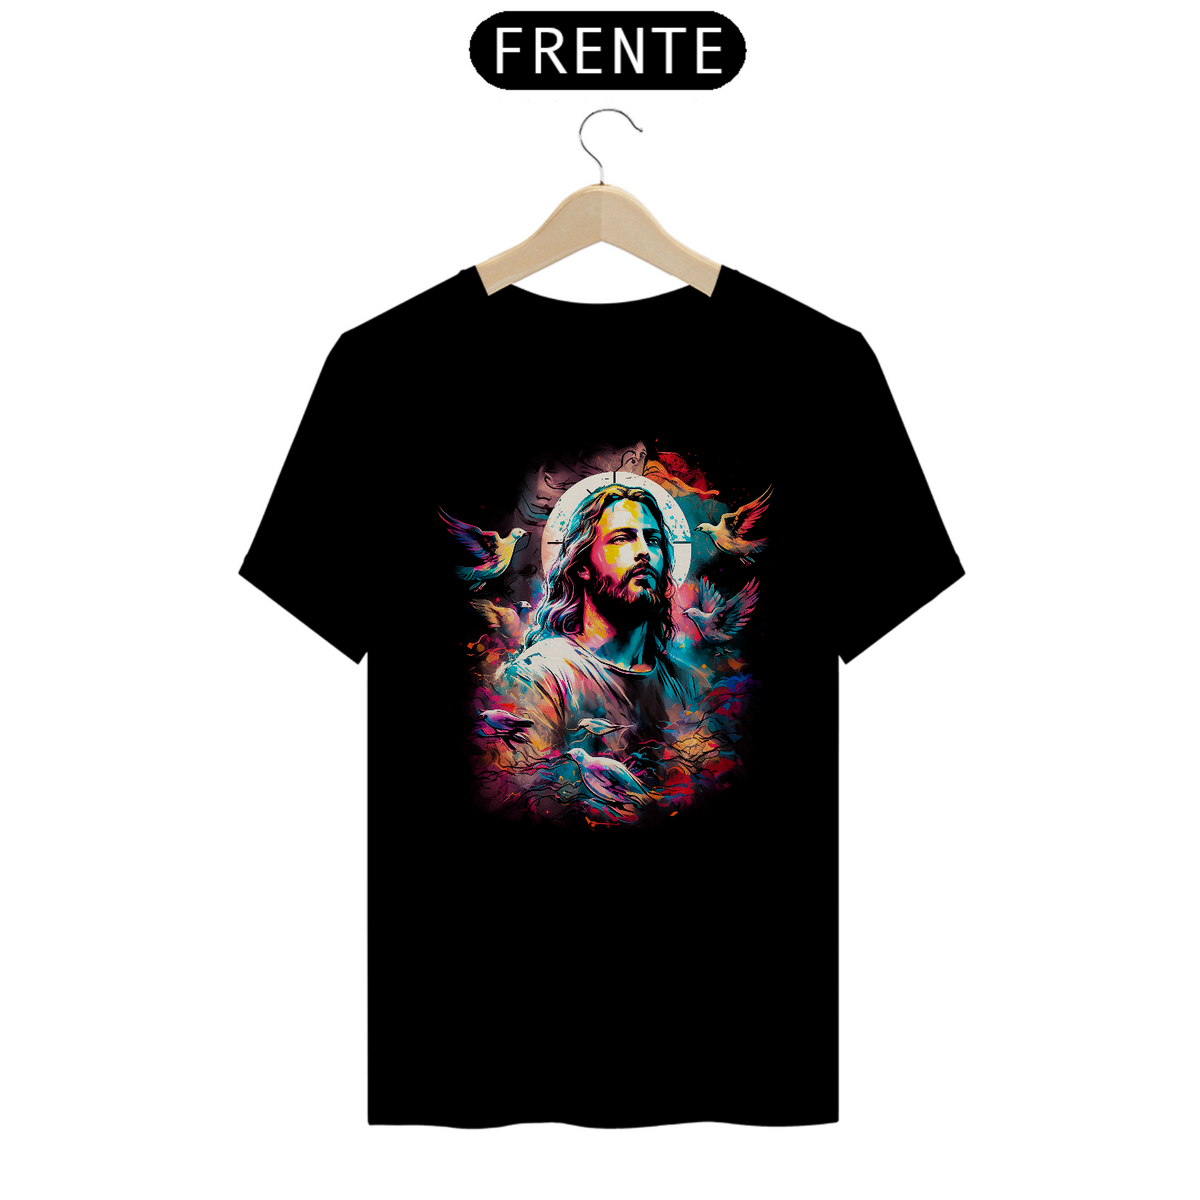 Nome do produto: Camisa - Jesus Cristo - Camiseta - Unisex - Premium (Cor Preta)